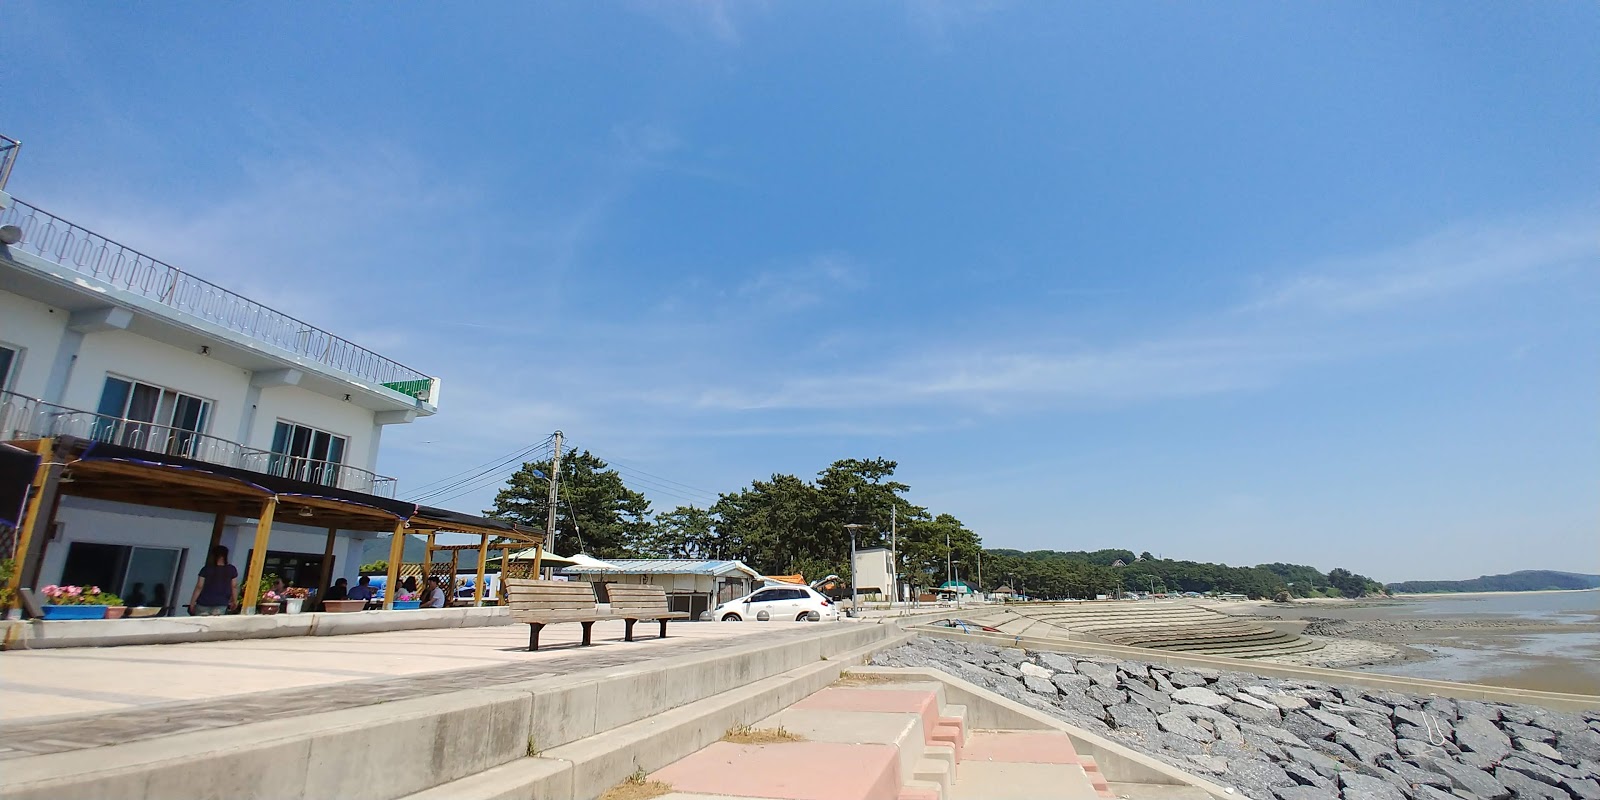 Foto af Biin Beach - populært sted blandt afslapningskendere